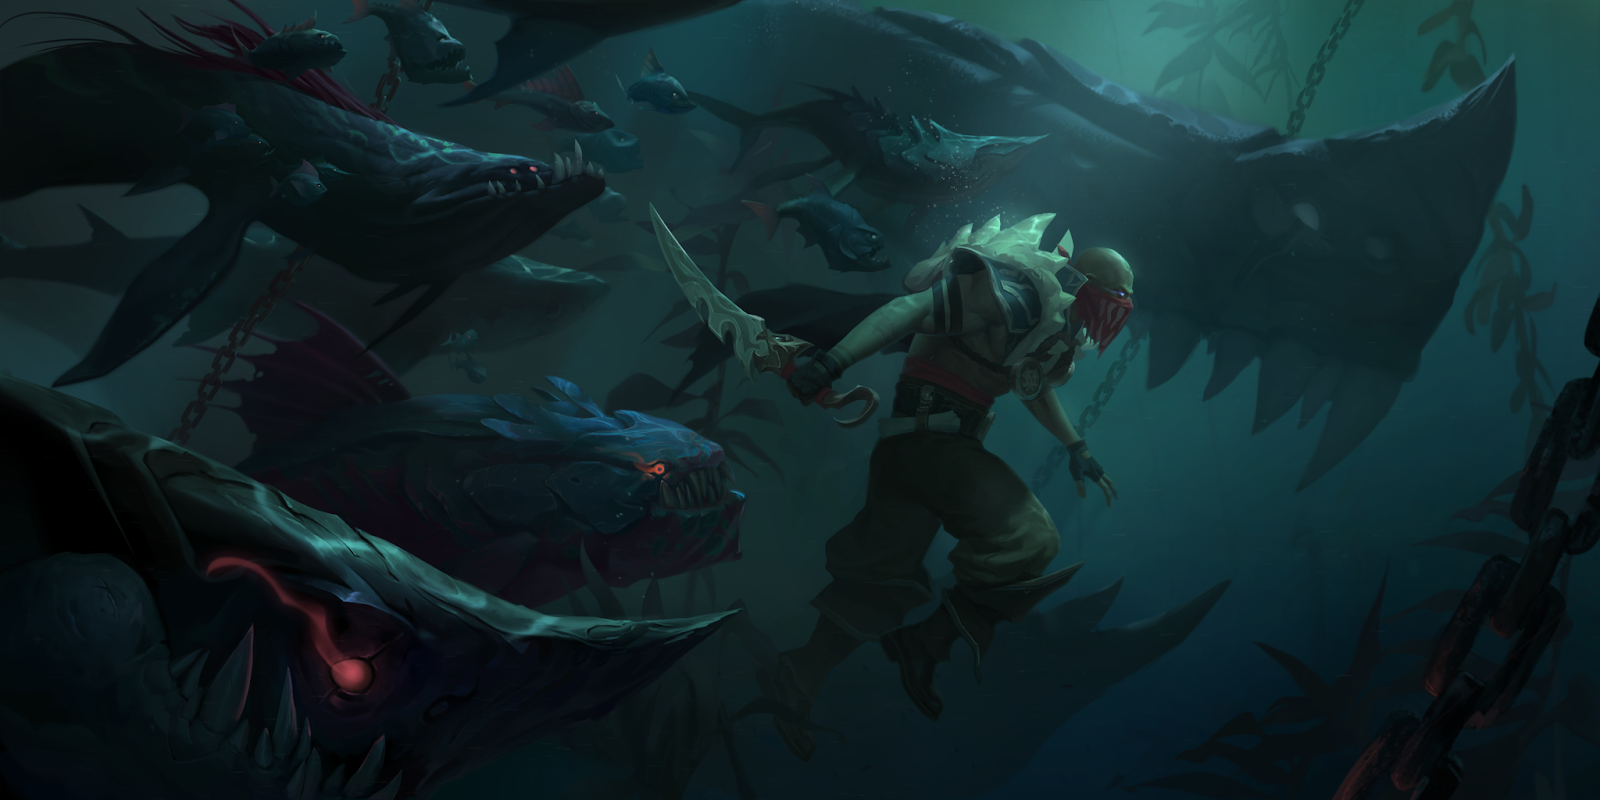 Ο Pyke επιπλέει ήρεμα στο νερό, κρατώντας το χέρι του γύρω από το ξεκοκκάλισμα, ενώ τον κυκλώνουν καρχαρίες και lurkers. Αίματα βγαίνουν από το μαχαίρι του και δείχνουν τα κυκλικά ίχνη γύρω από τα lurkers.